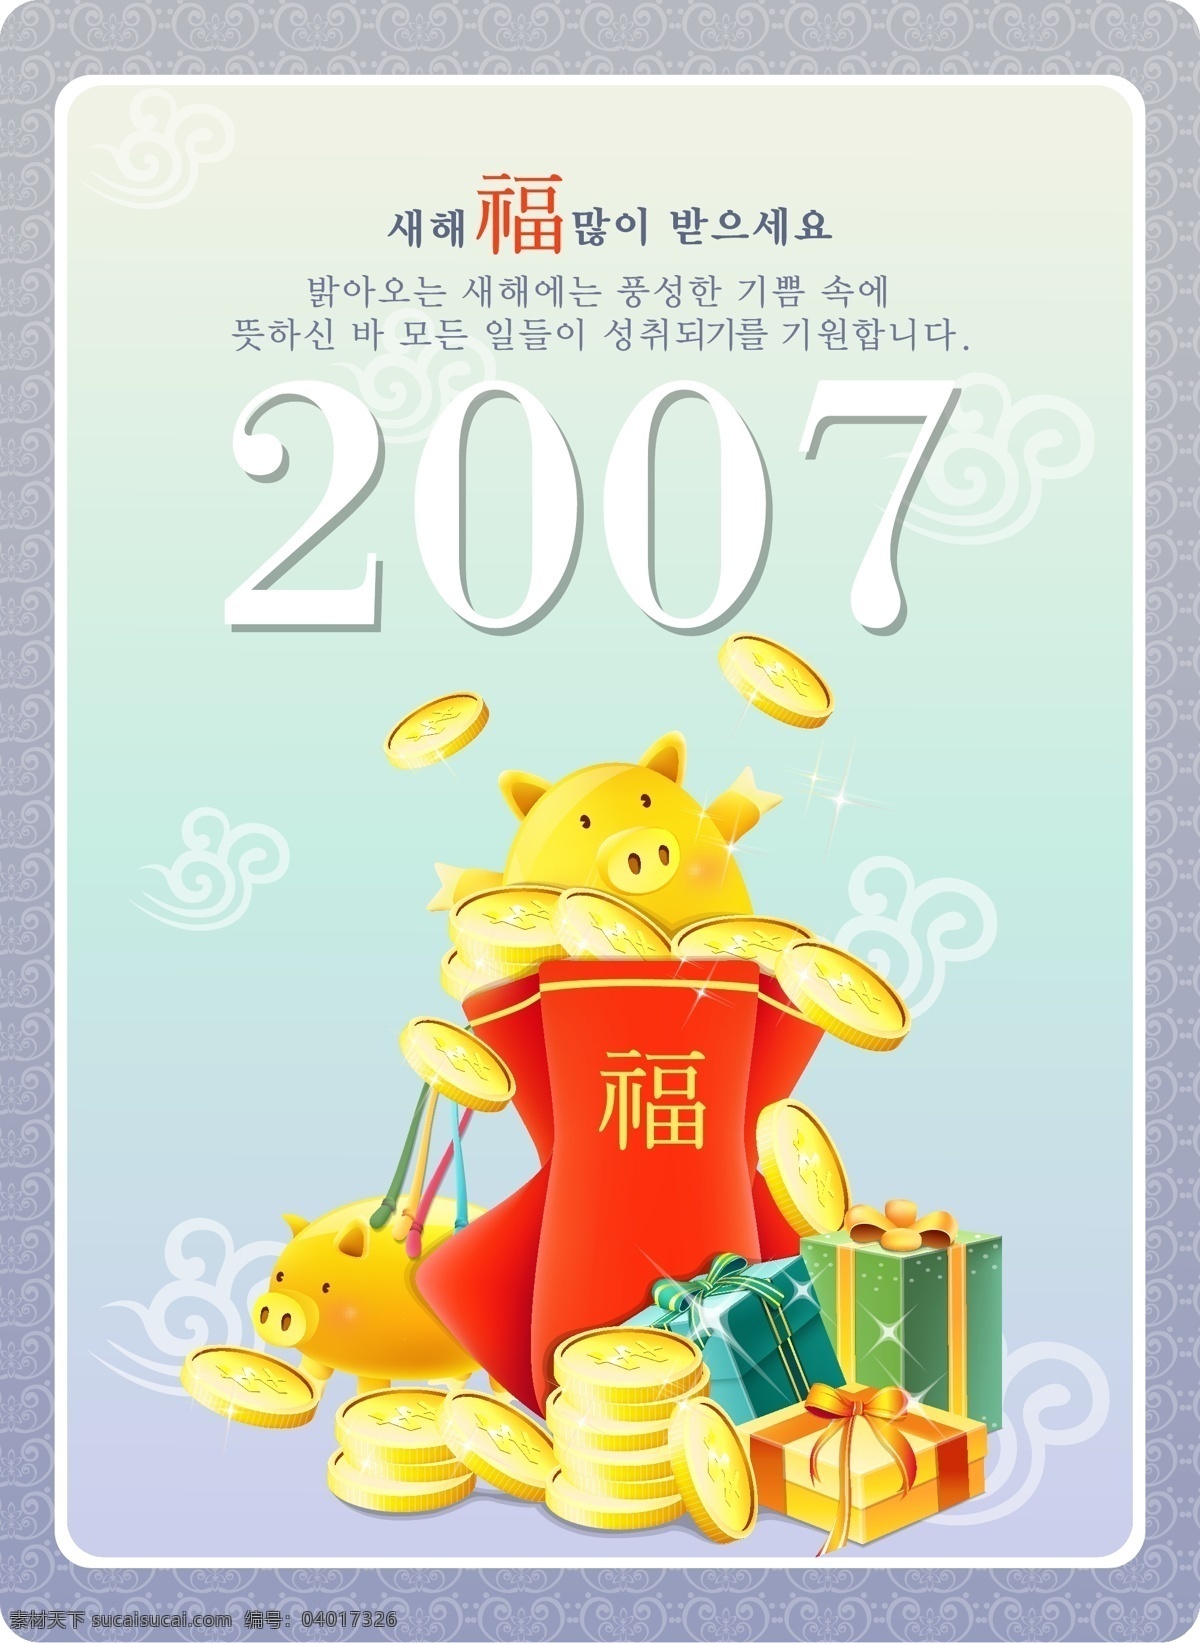 2007 最新 韩国 福 袋 金 猪 活动 页 模板 标识cdr 环保cdr 卡通环保 矢量素材 标签标识 矢量图 其他矢量图